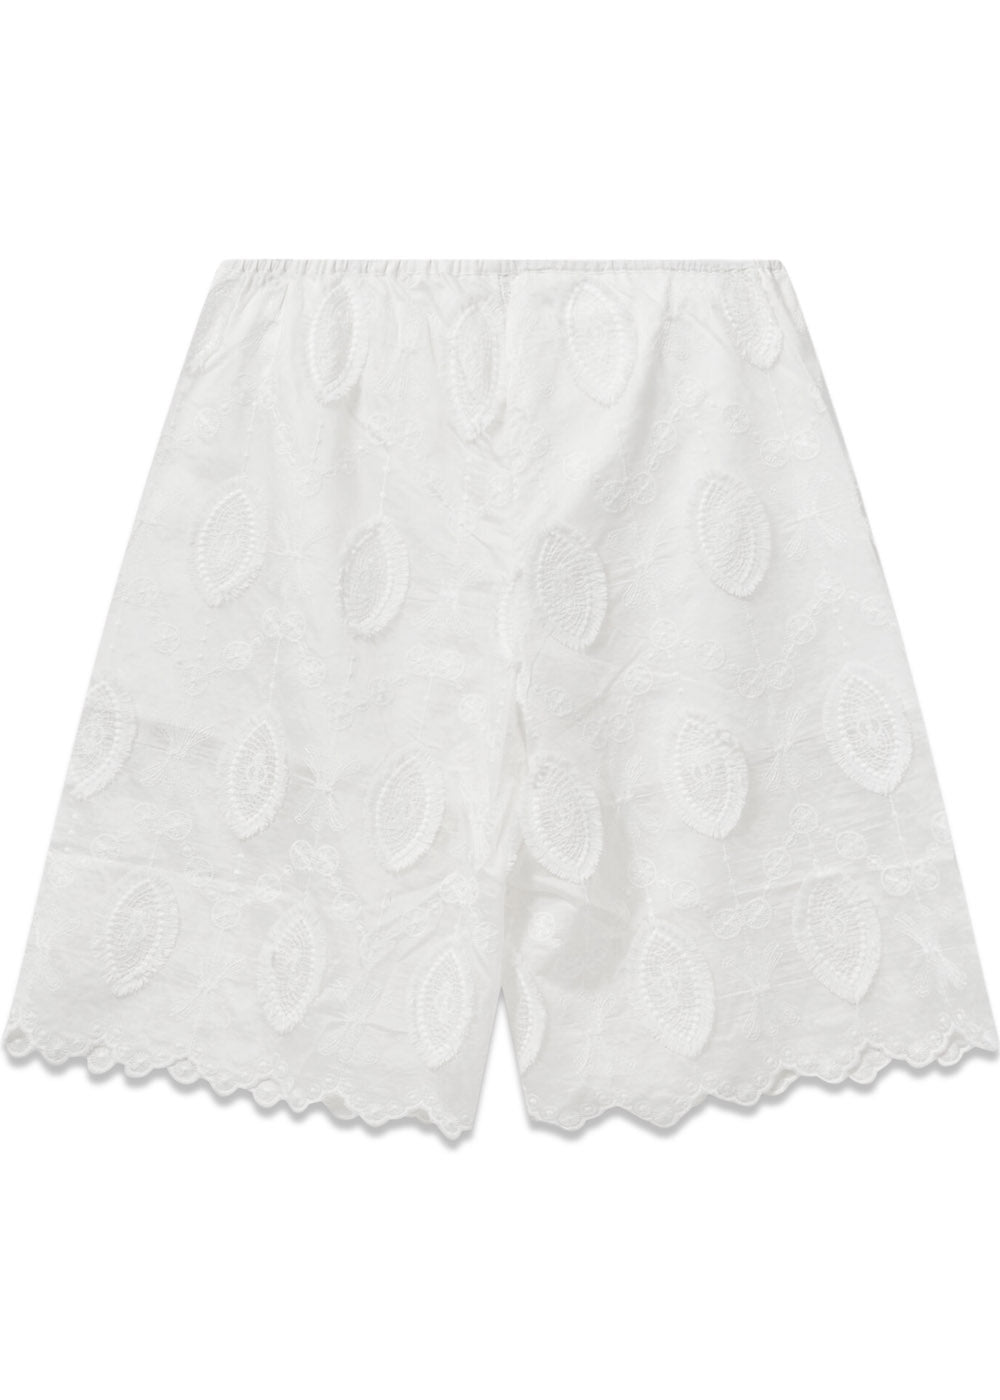 Afrodite Shorts - Cream